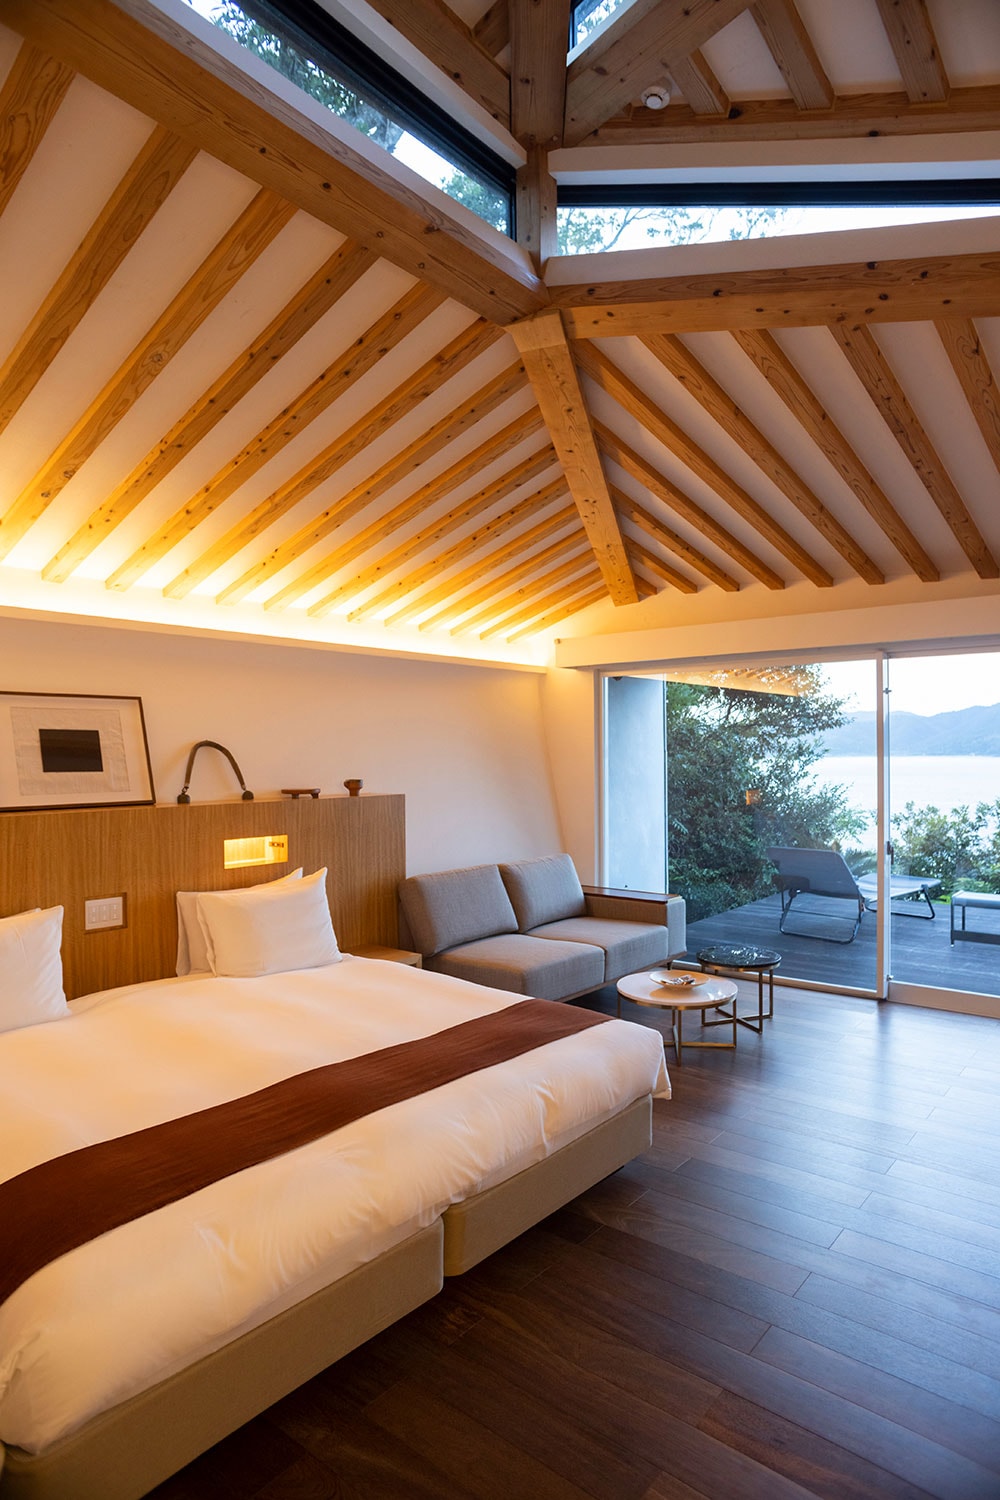 天井から自然光を取り込み、テラスも客室と一体化させる秀逸な設計。